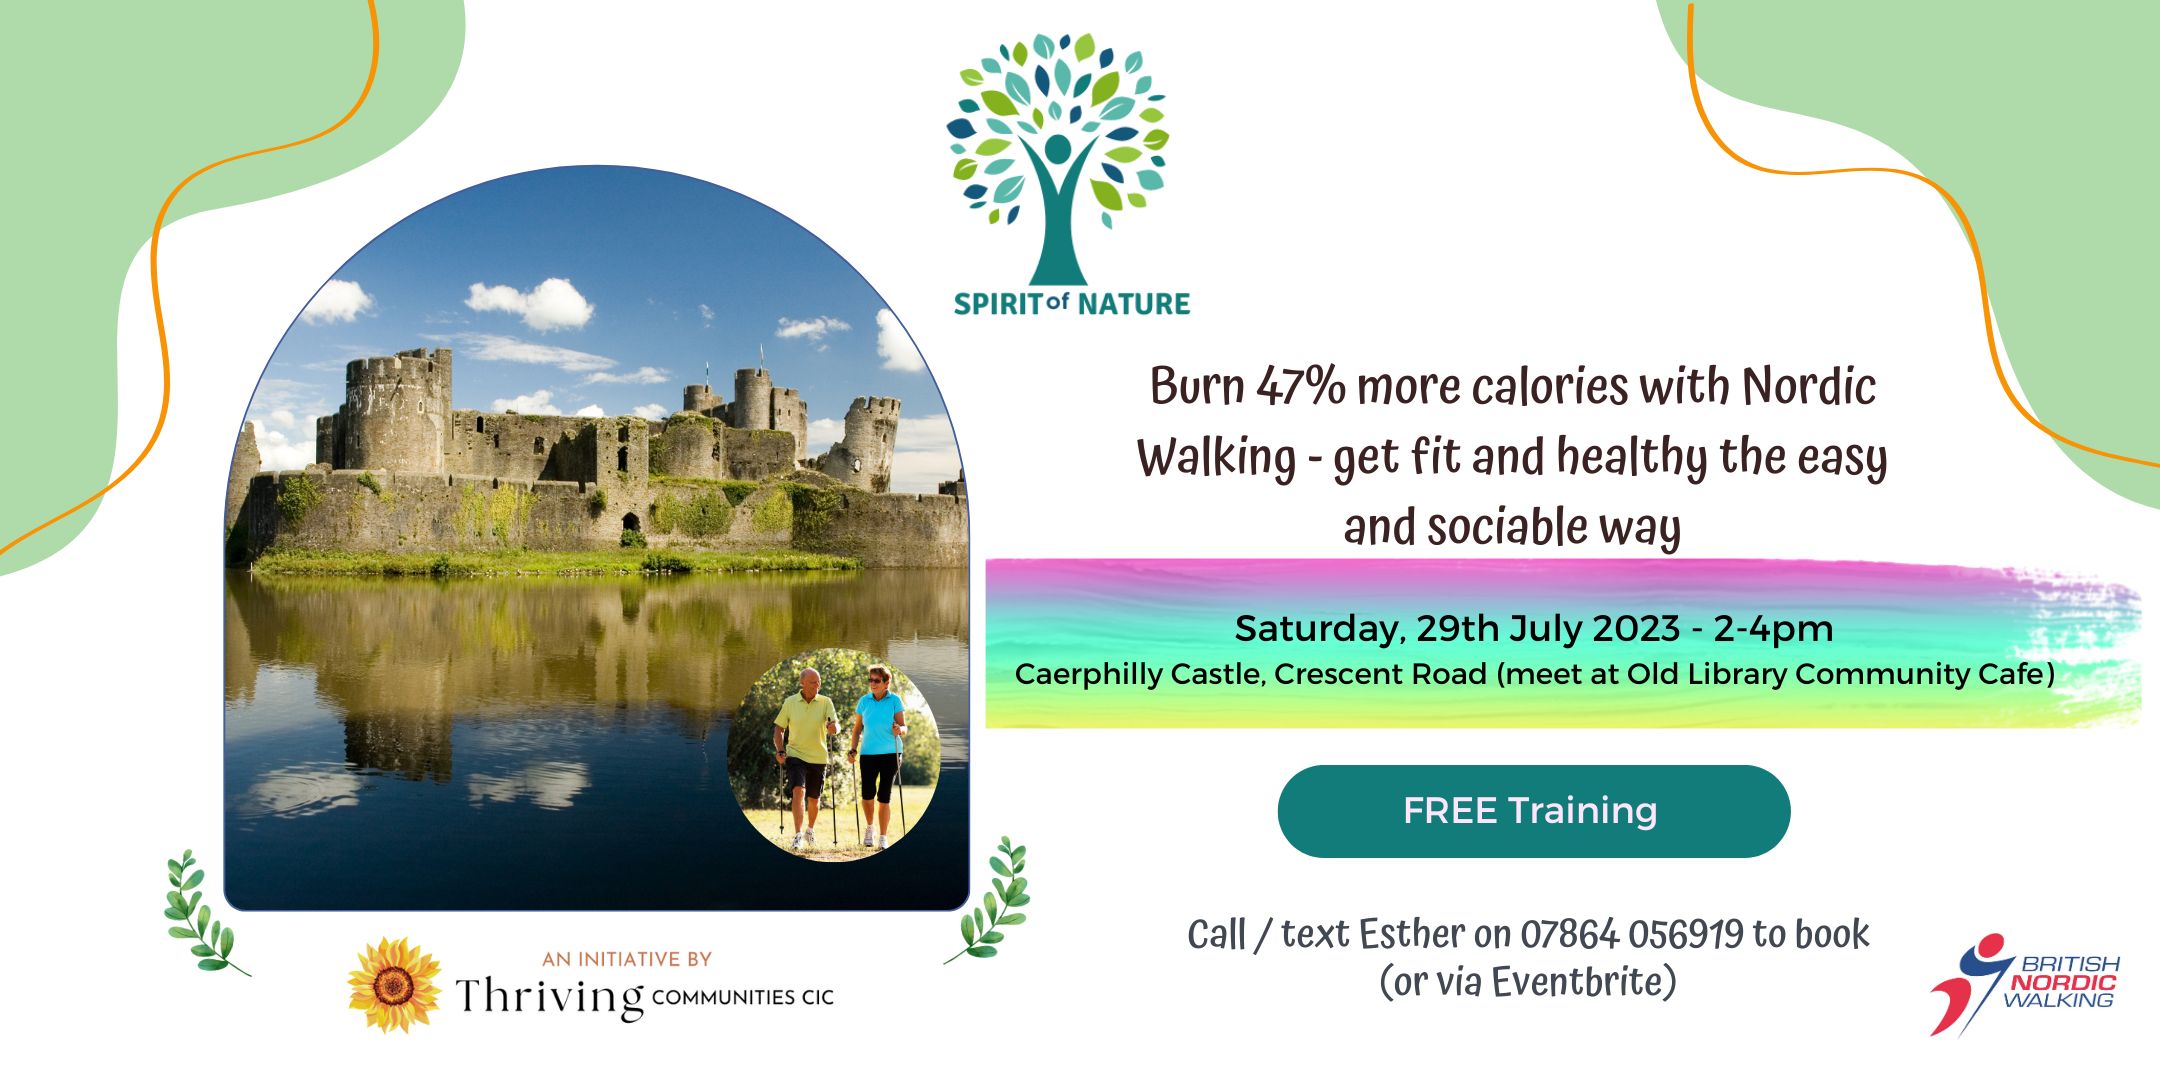 Nordic-Walking-Eventbrite-Banner-Caerphilly-Castle-Jul29